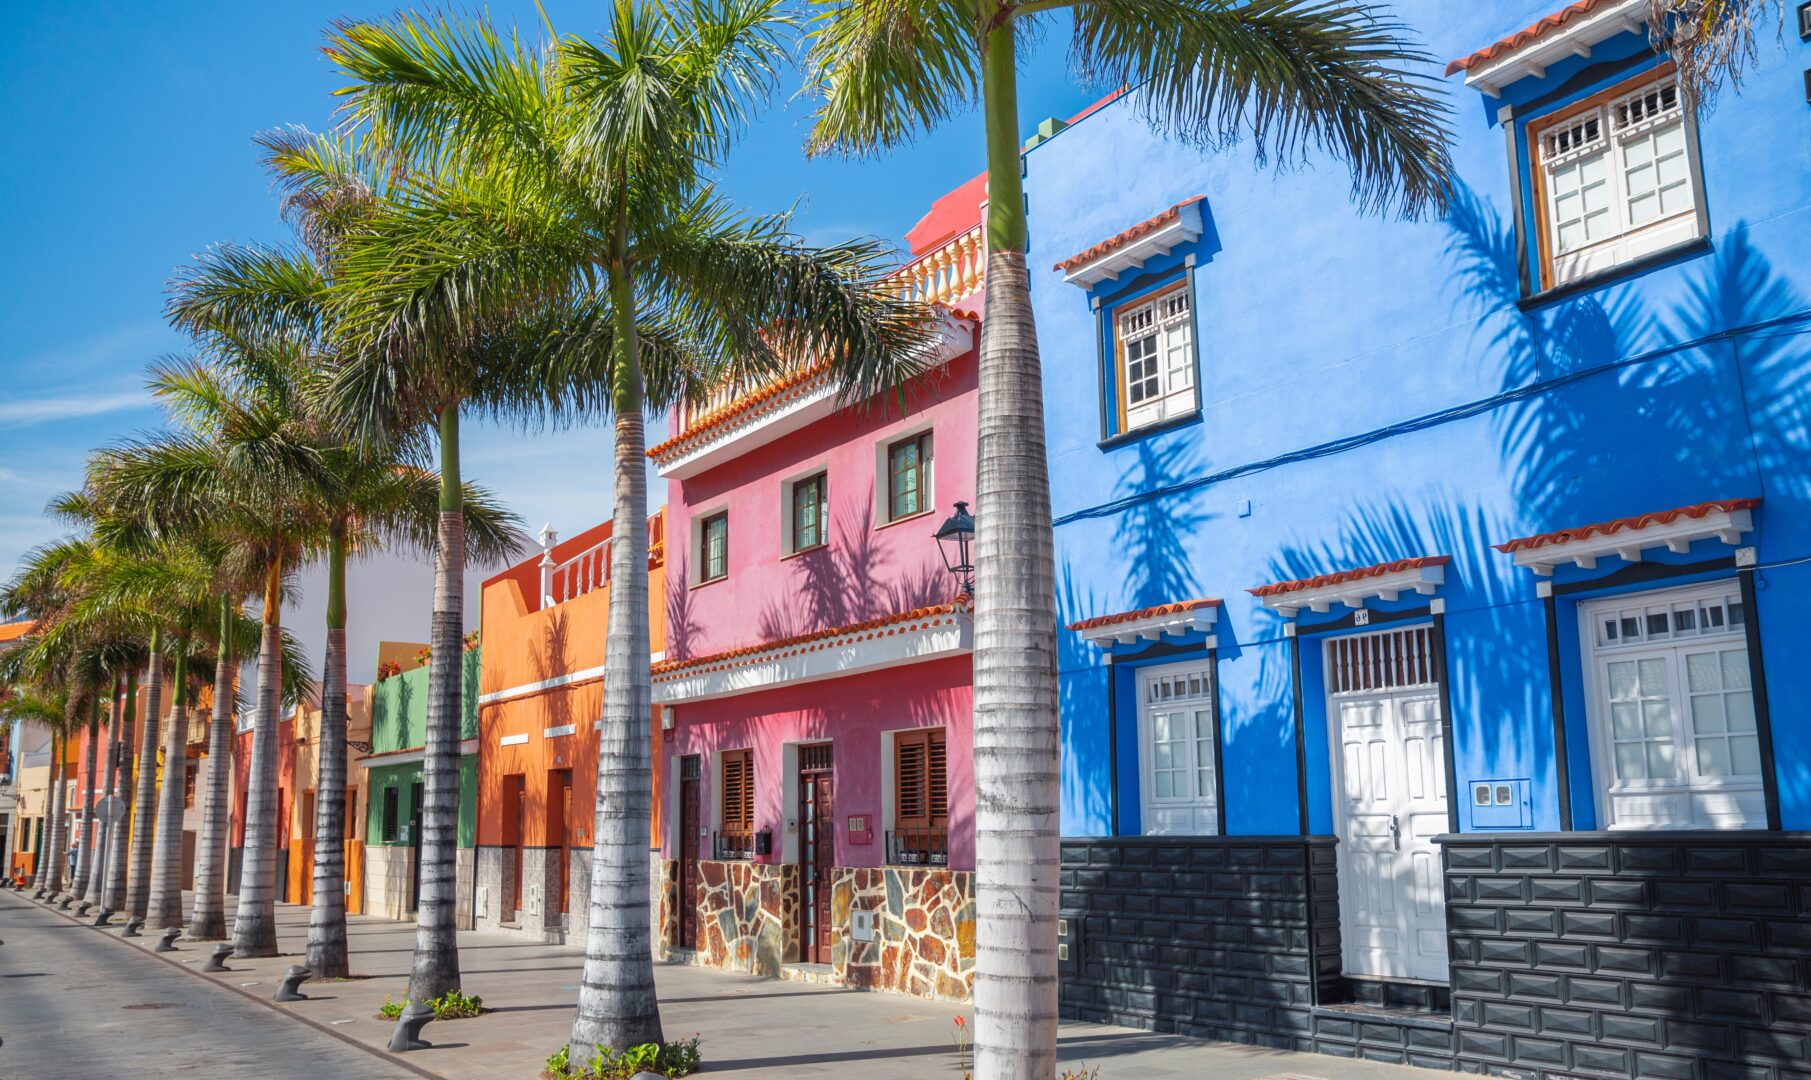 Maisons colorées à Puerto de la Cruz à Tenerife dans les Canaries